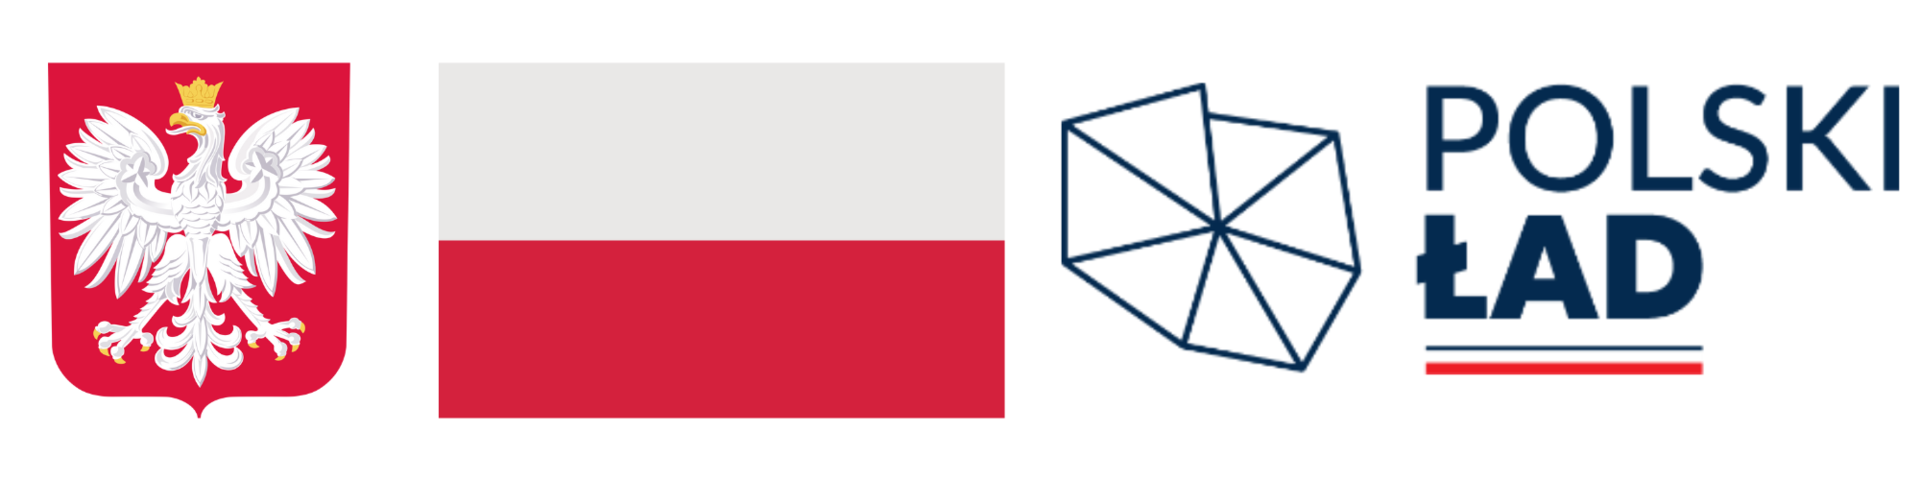 Rysunek zawiera barwy Rzeczypospolitej Polskiej i wizerunek godła Rzeczypospolitej Polskiej, logo Polski Ład